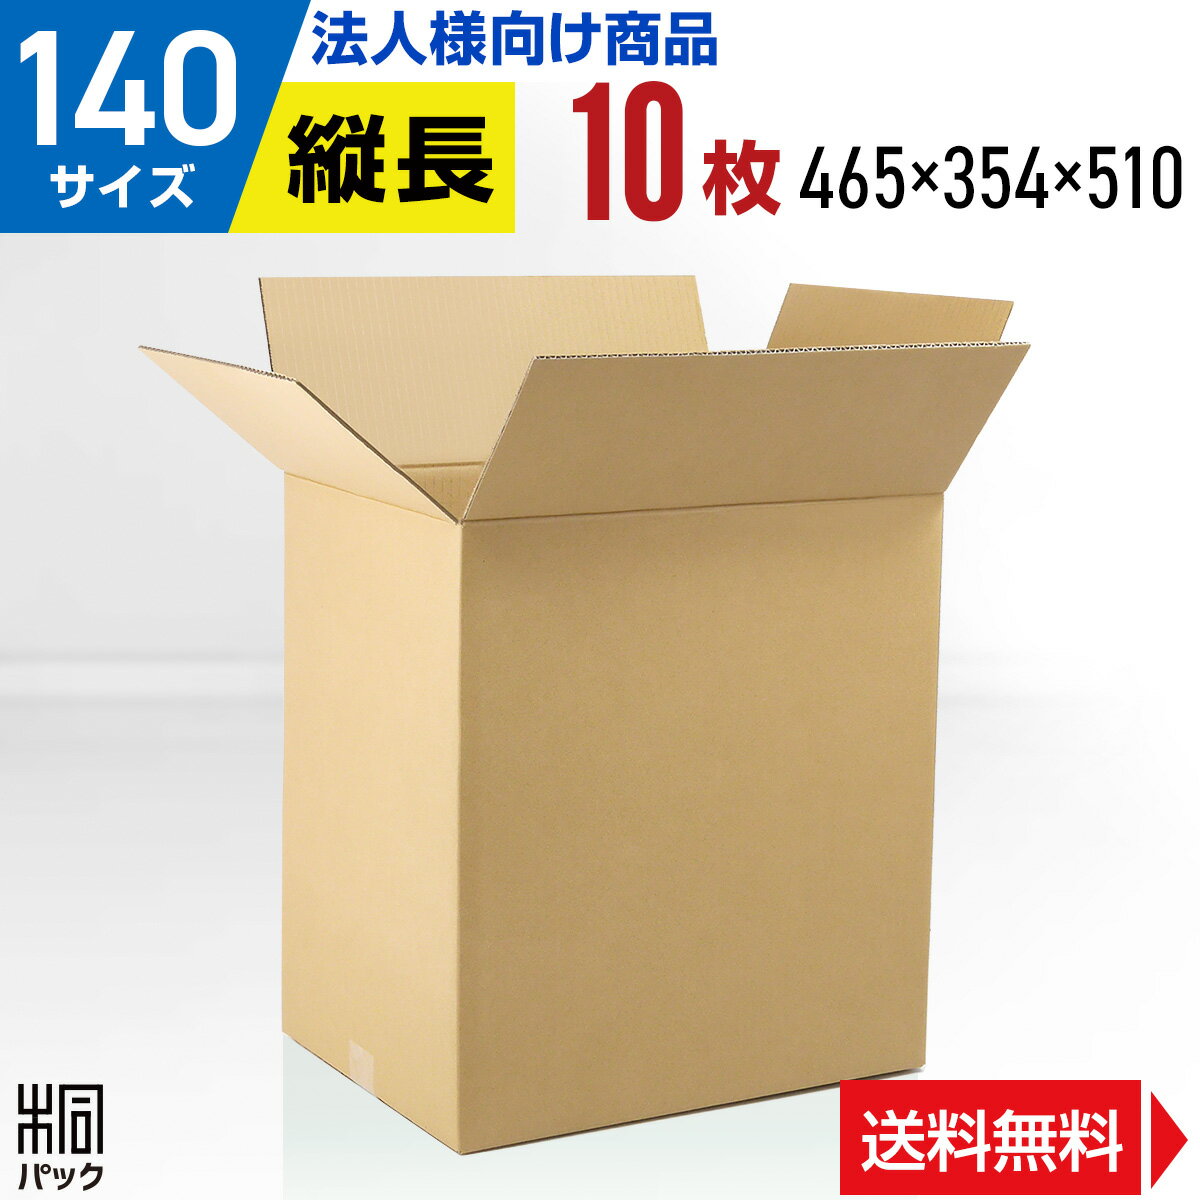 【法人特価】段ボール 箱 140サイズ 10枚 (5mm厚 